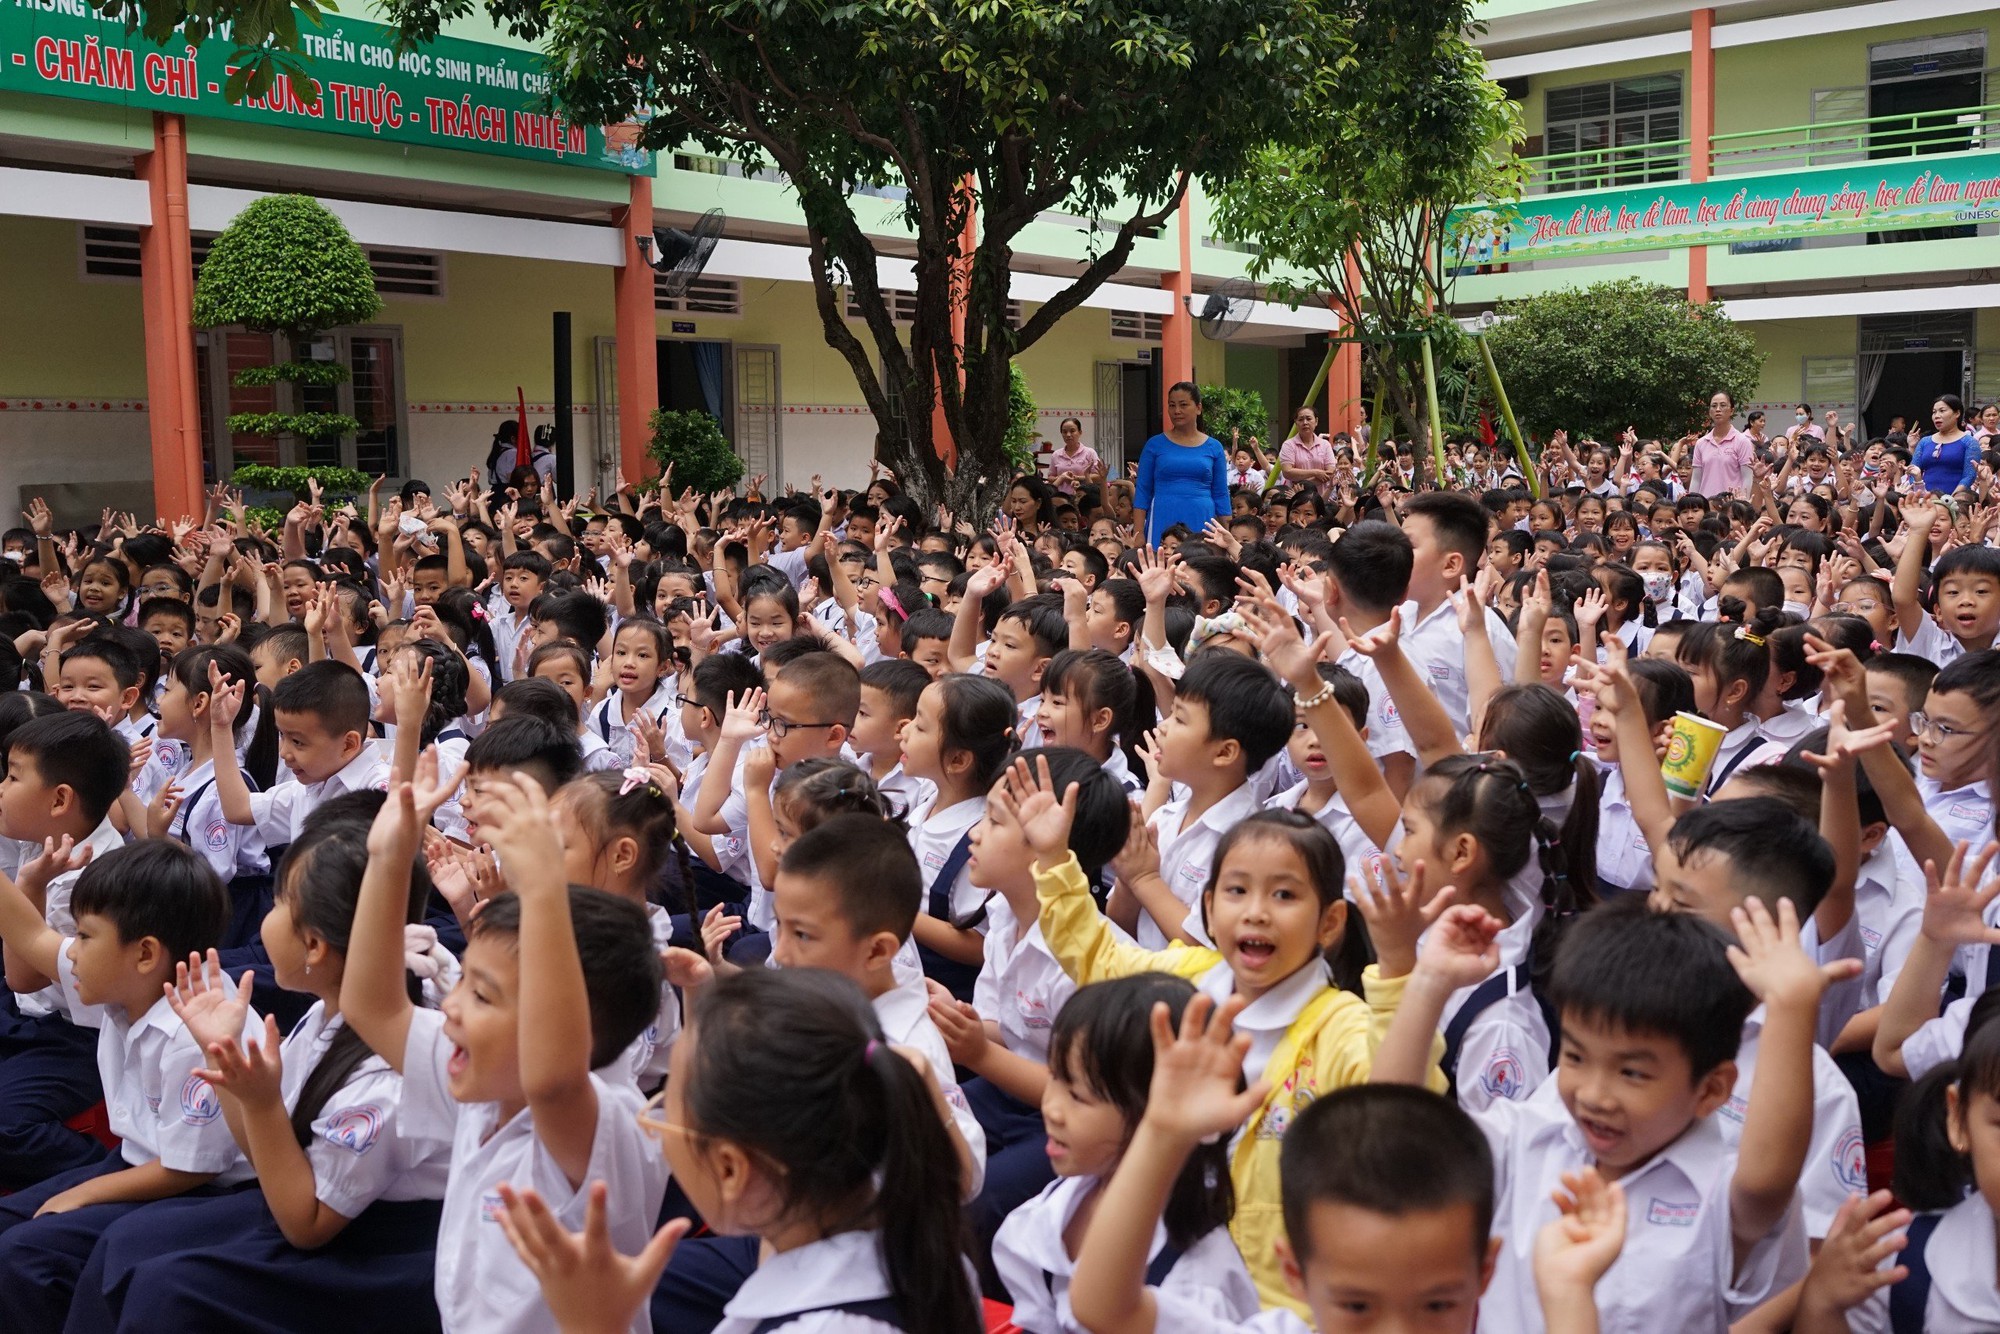 HEAD Sơn Minh trao mũ bảo hiểm cho học sinh trường tiểu học Đinh Tiên Hoàng - Ảnh 1.